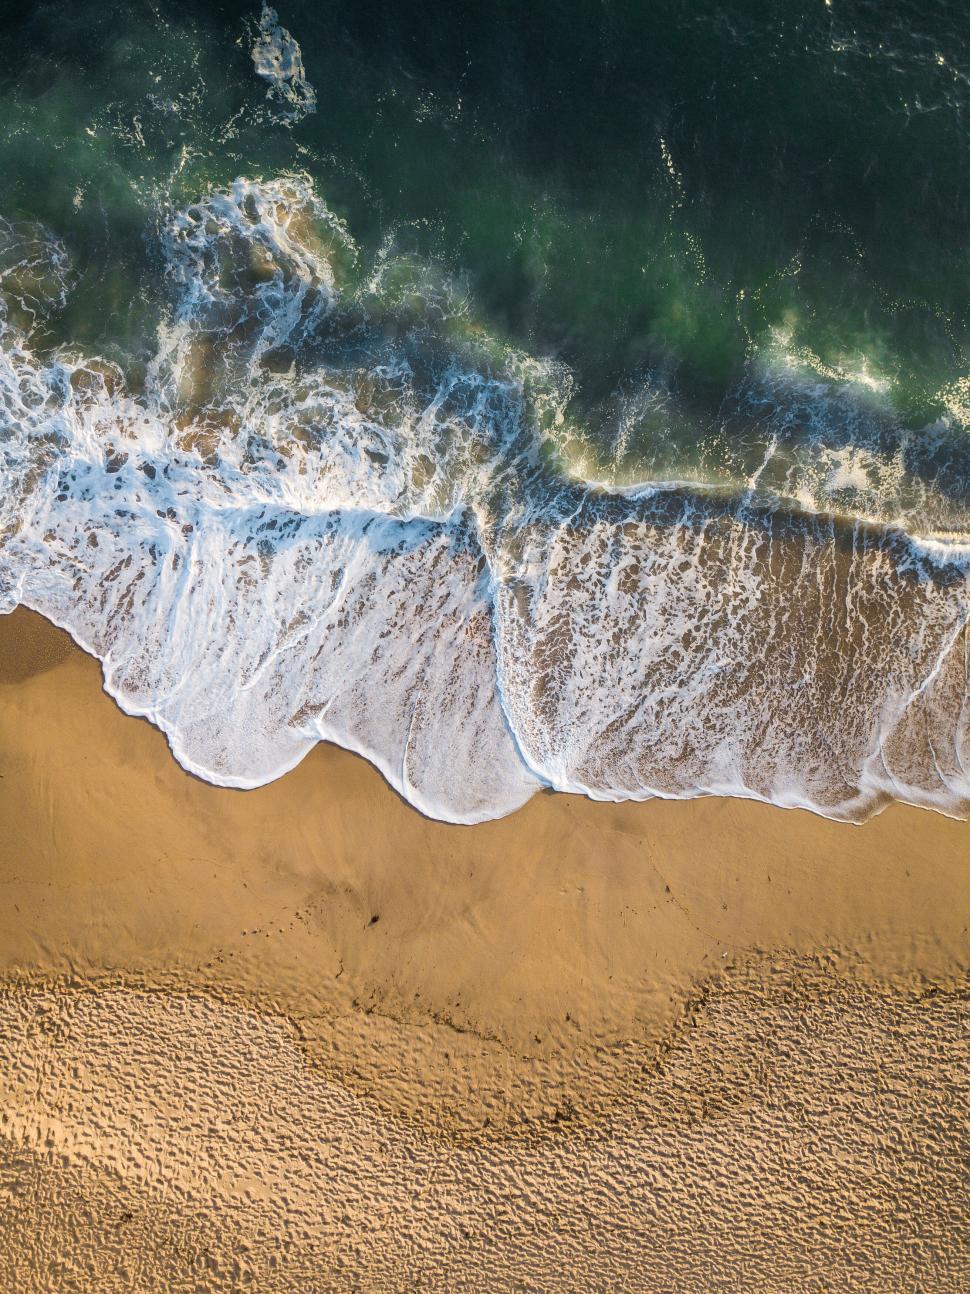 Free Image of Aerial view of ocean waves on sandy beach 